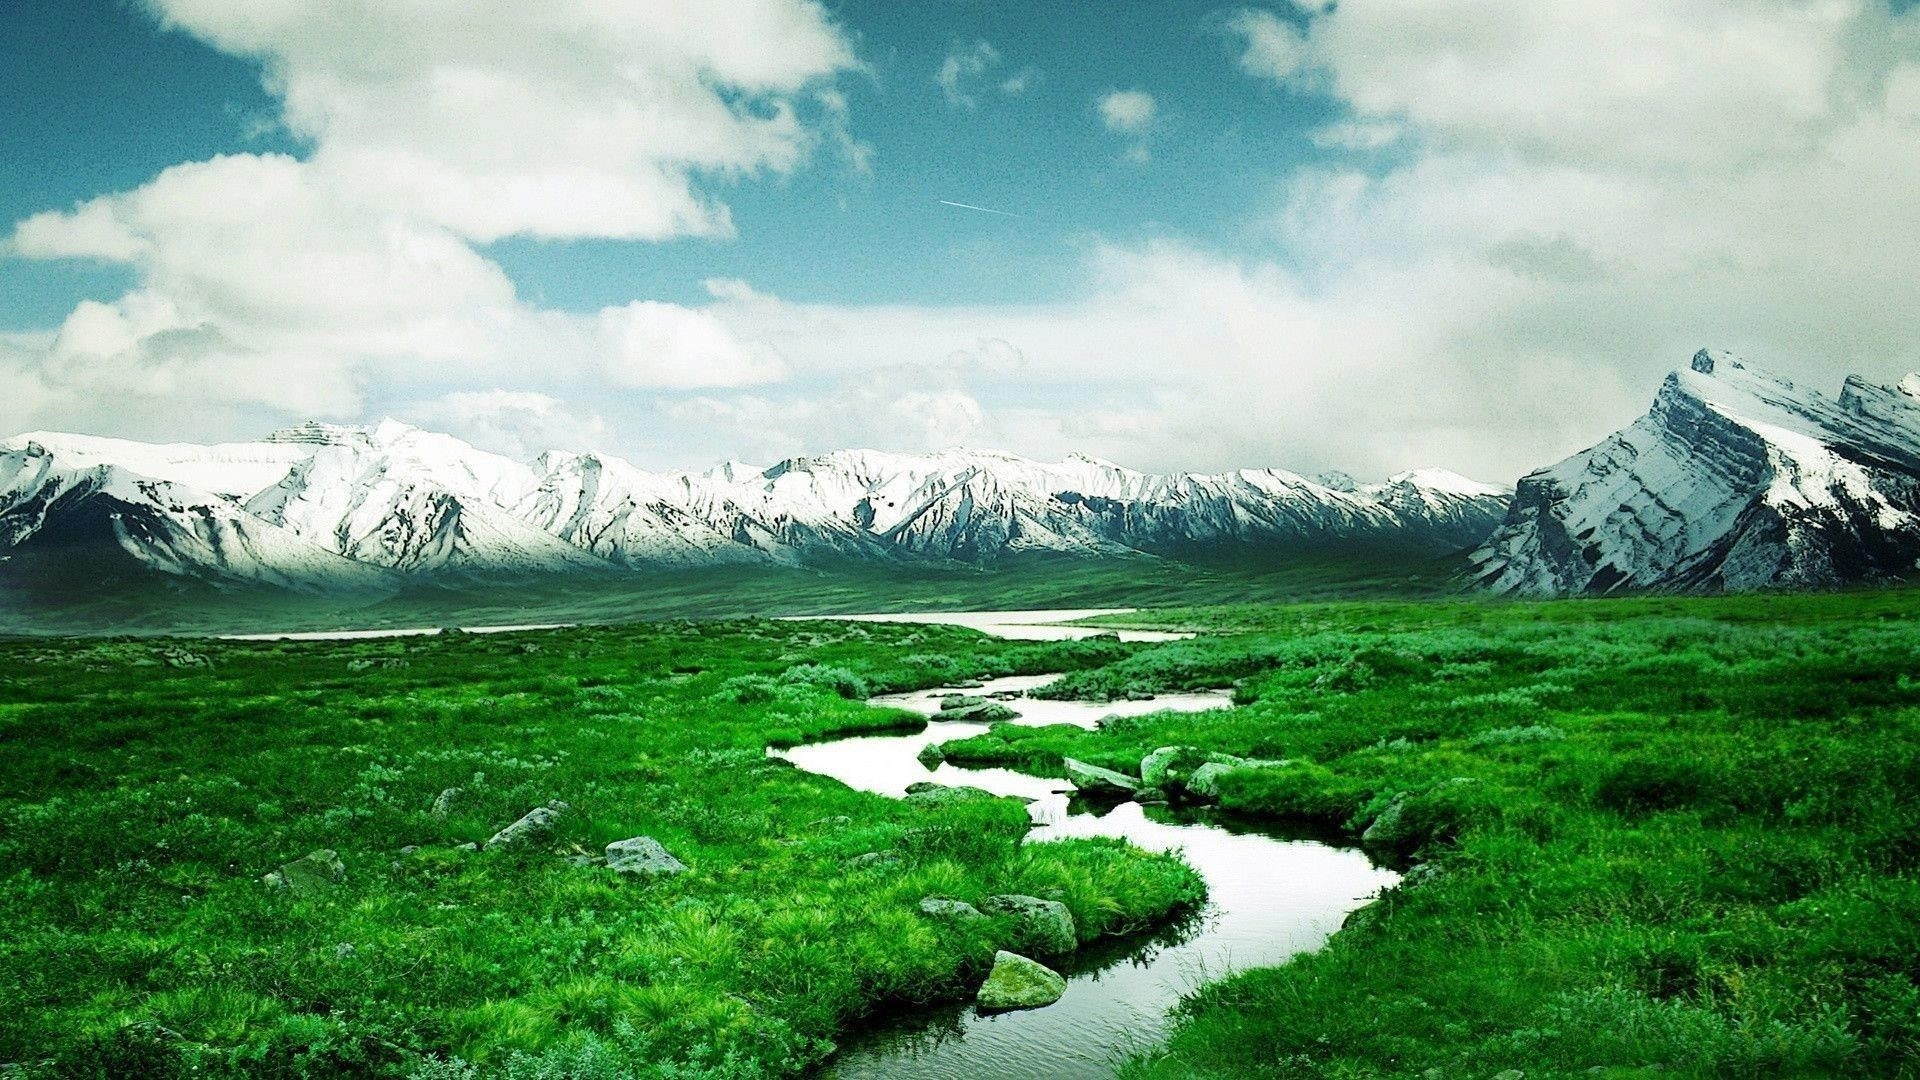 Река между лугами и пейзажем вид на заснеженные горы под облачным небом природа обои скачать